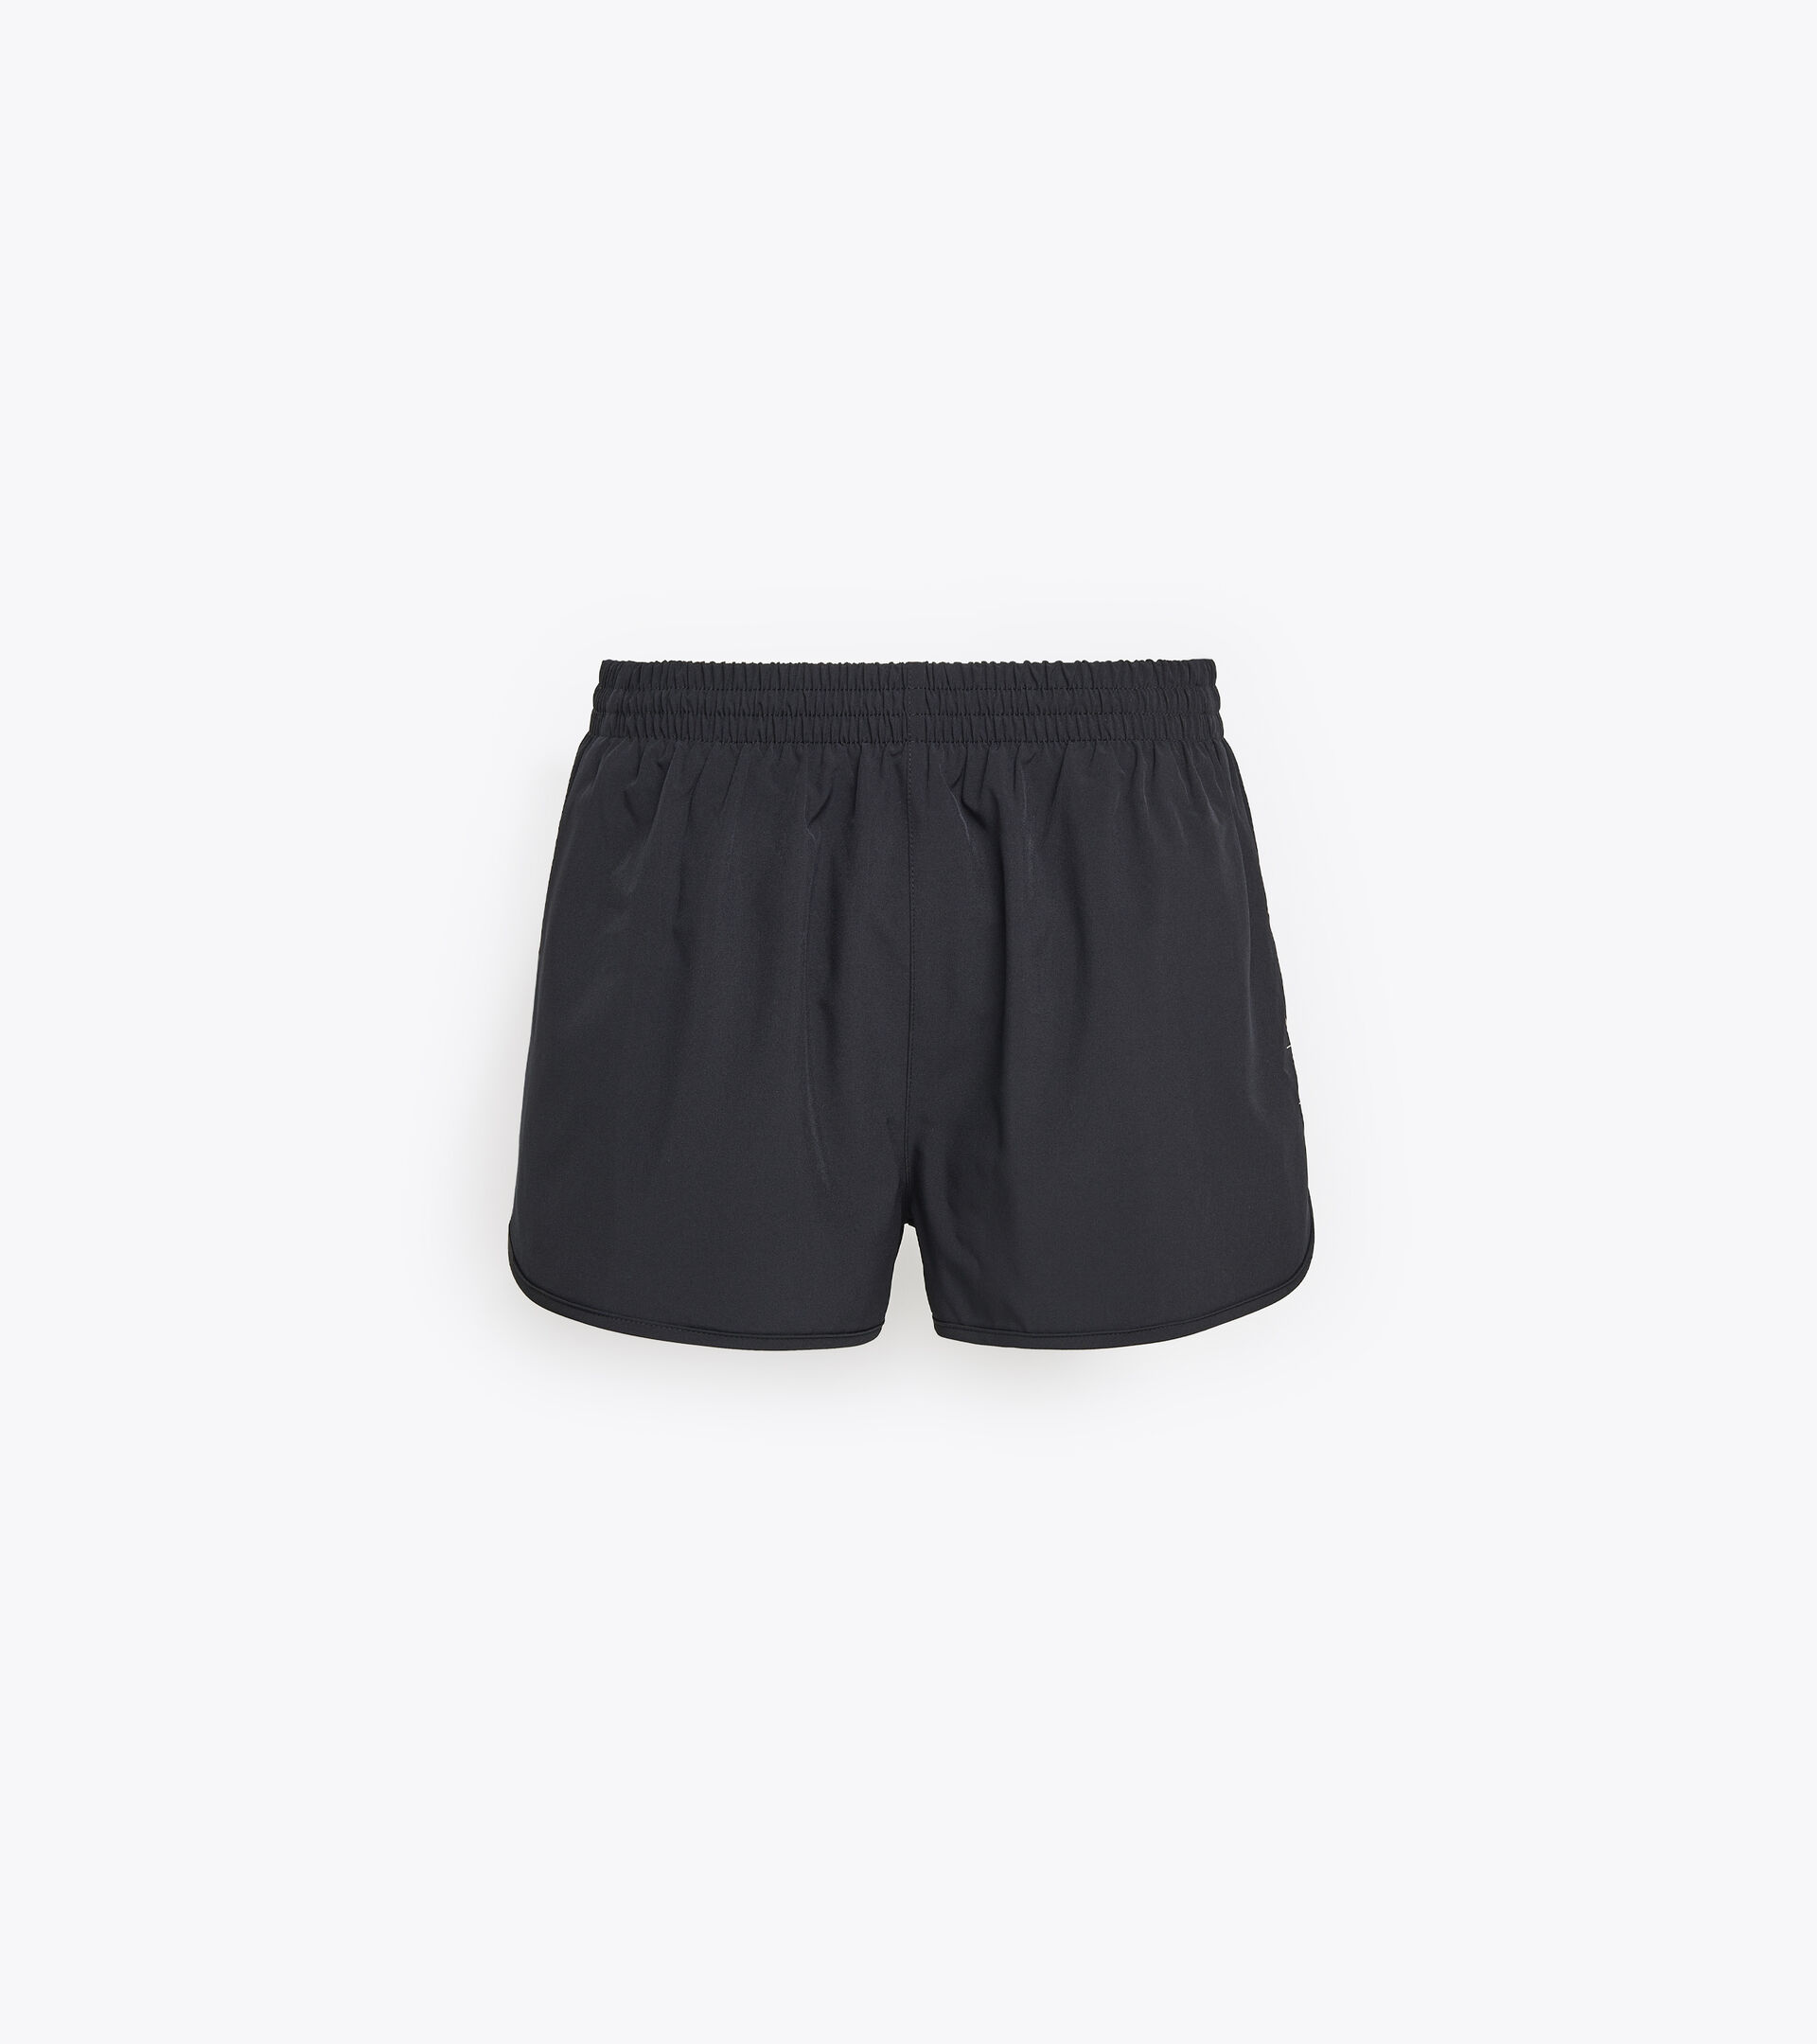 SHORT RUN Running shorts - Men - Diadora Online Store DK